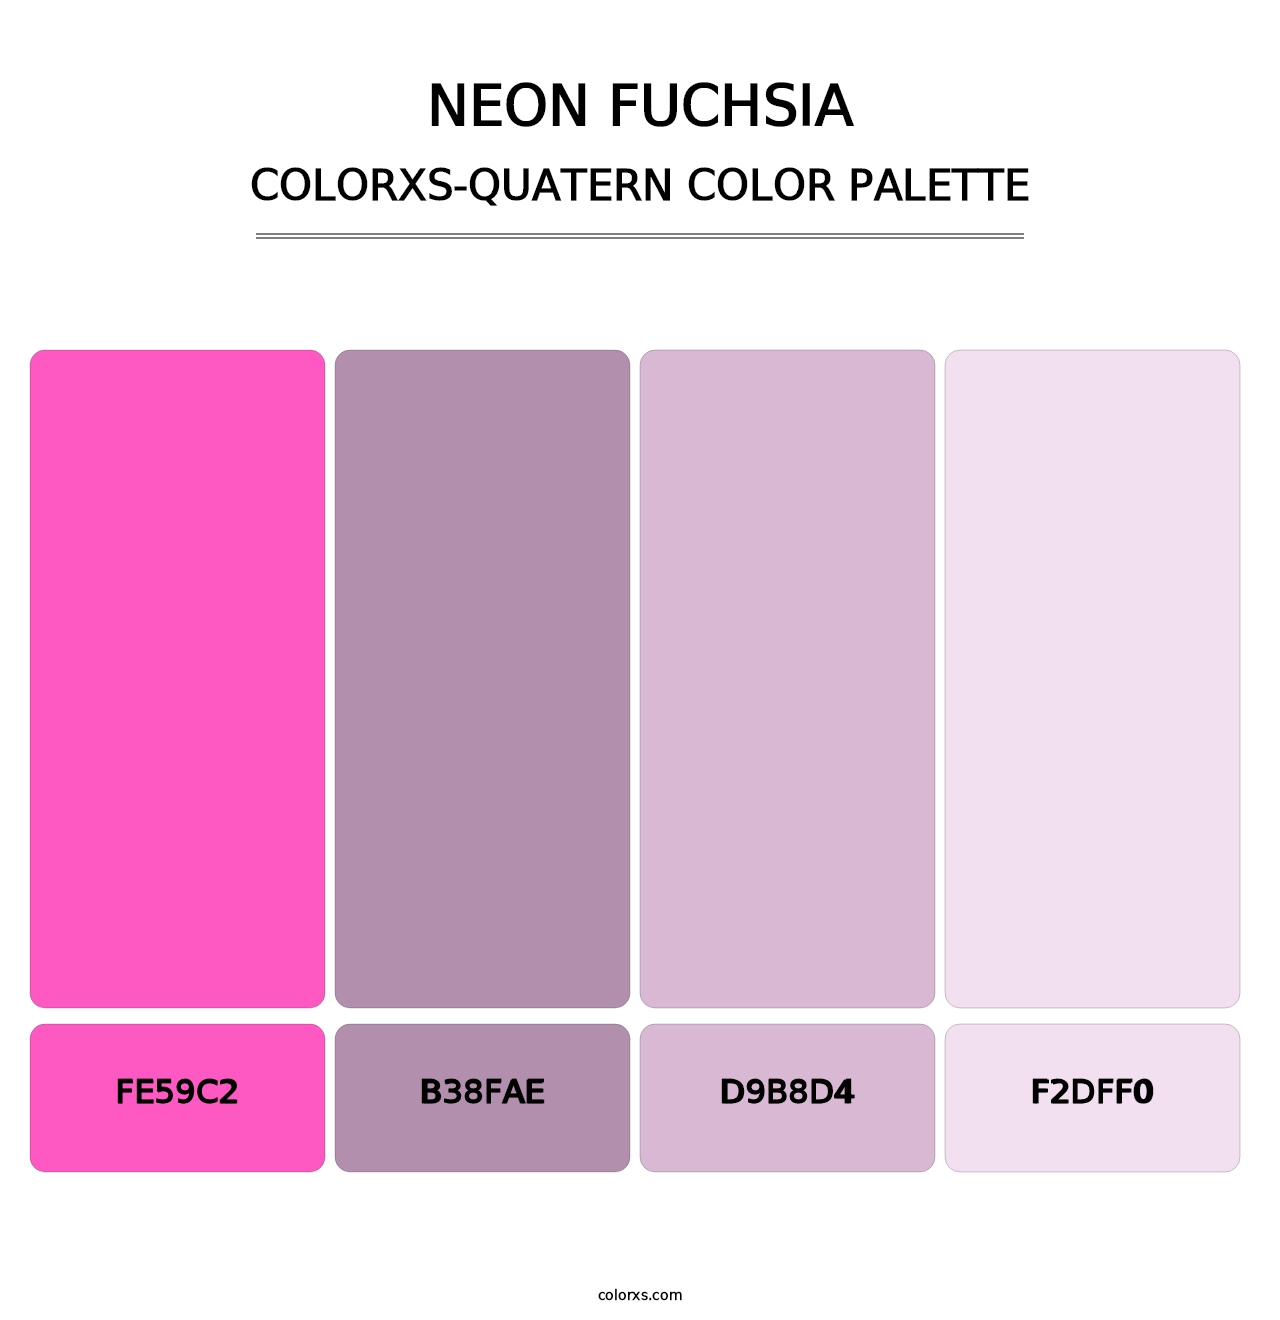 Neon Fuchsia - Colorxs Quatern Palette